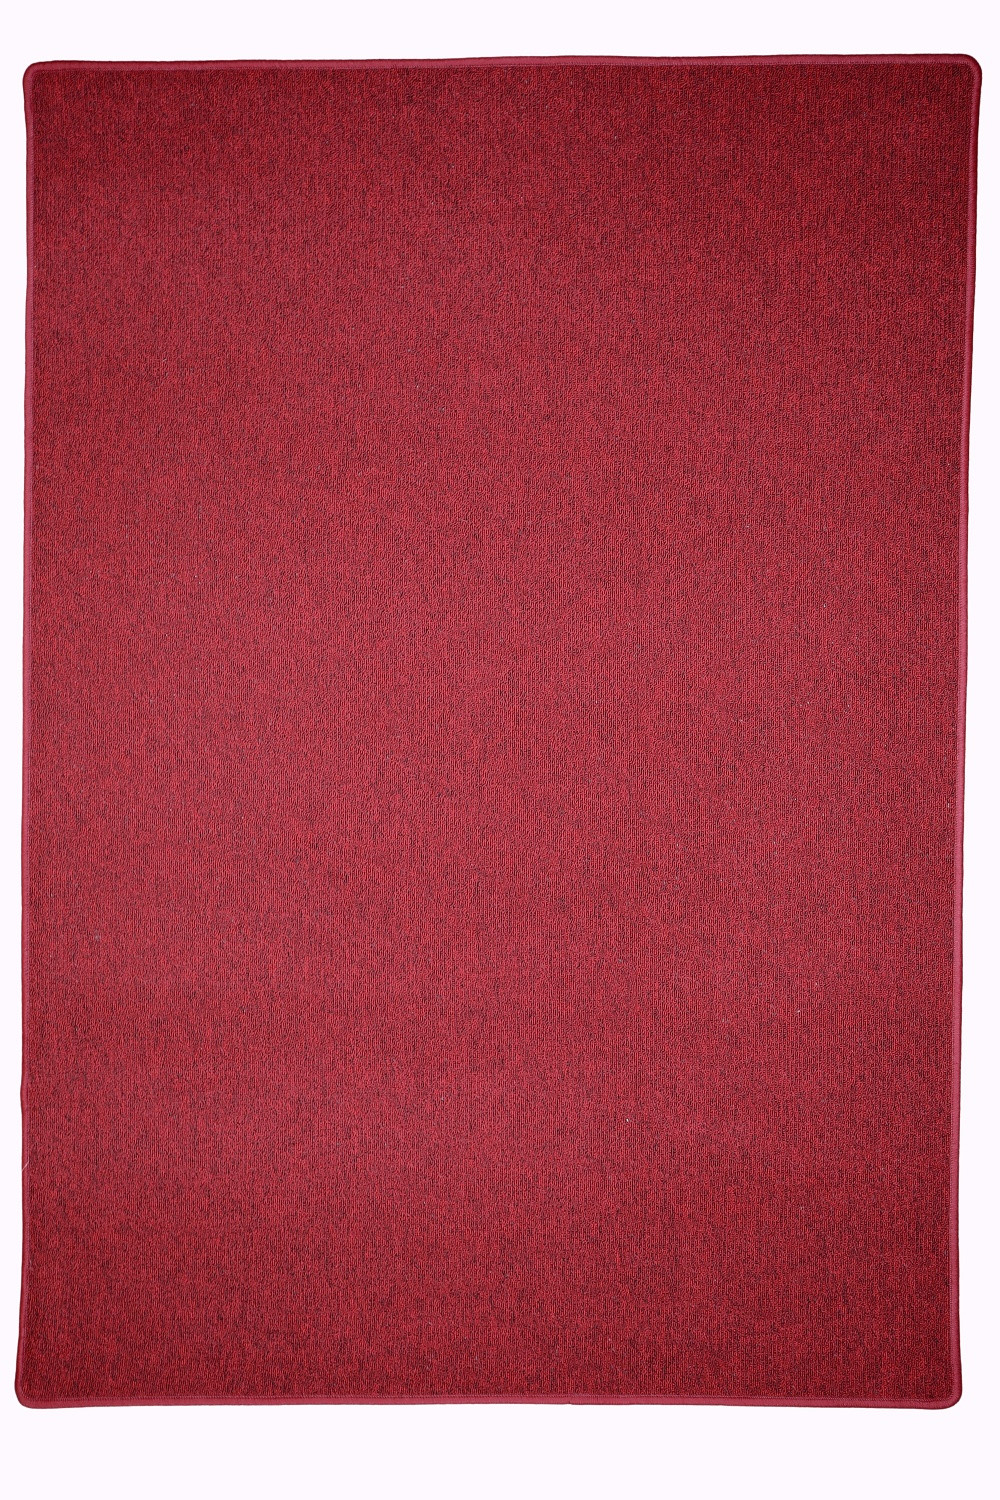 Kusový koberec Astra červená - 80x120 cm Vopi koberce 